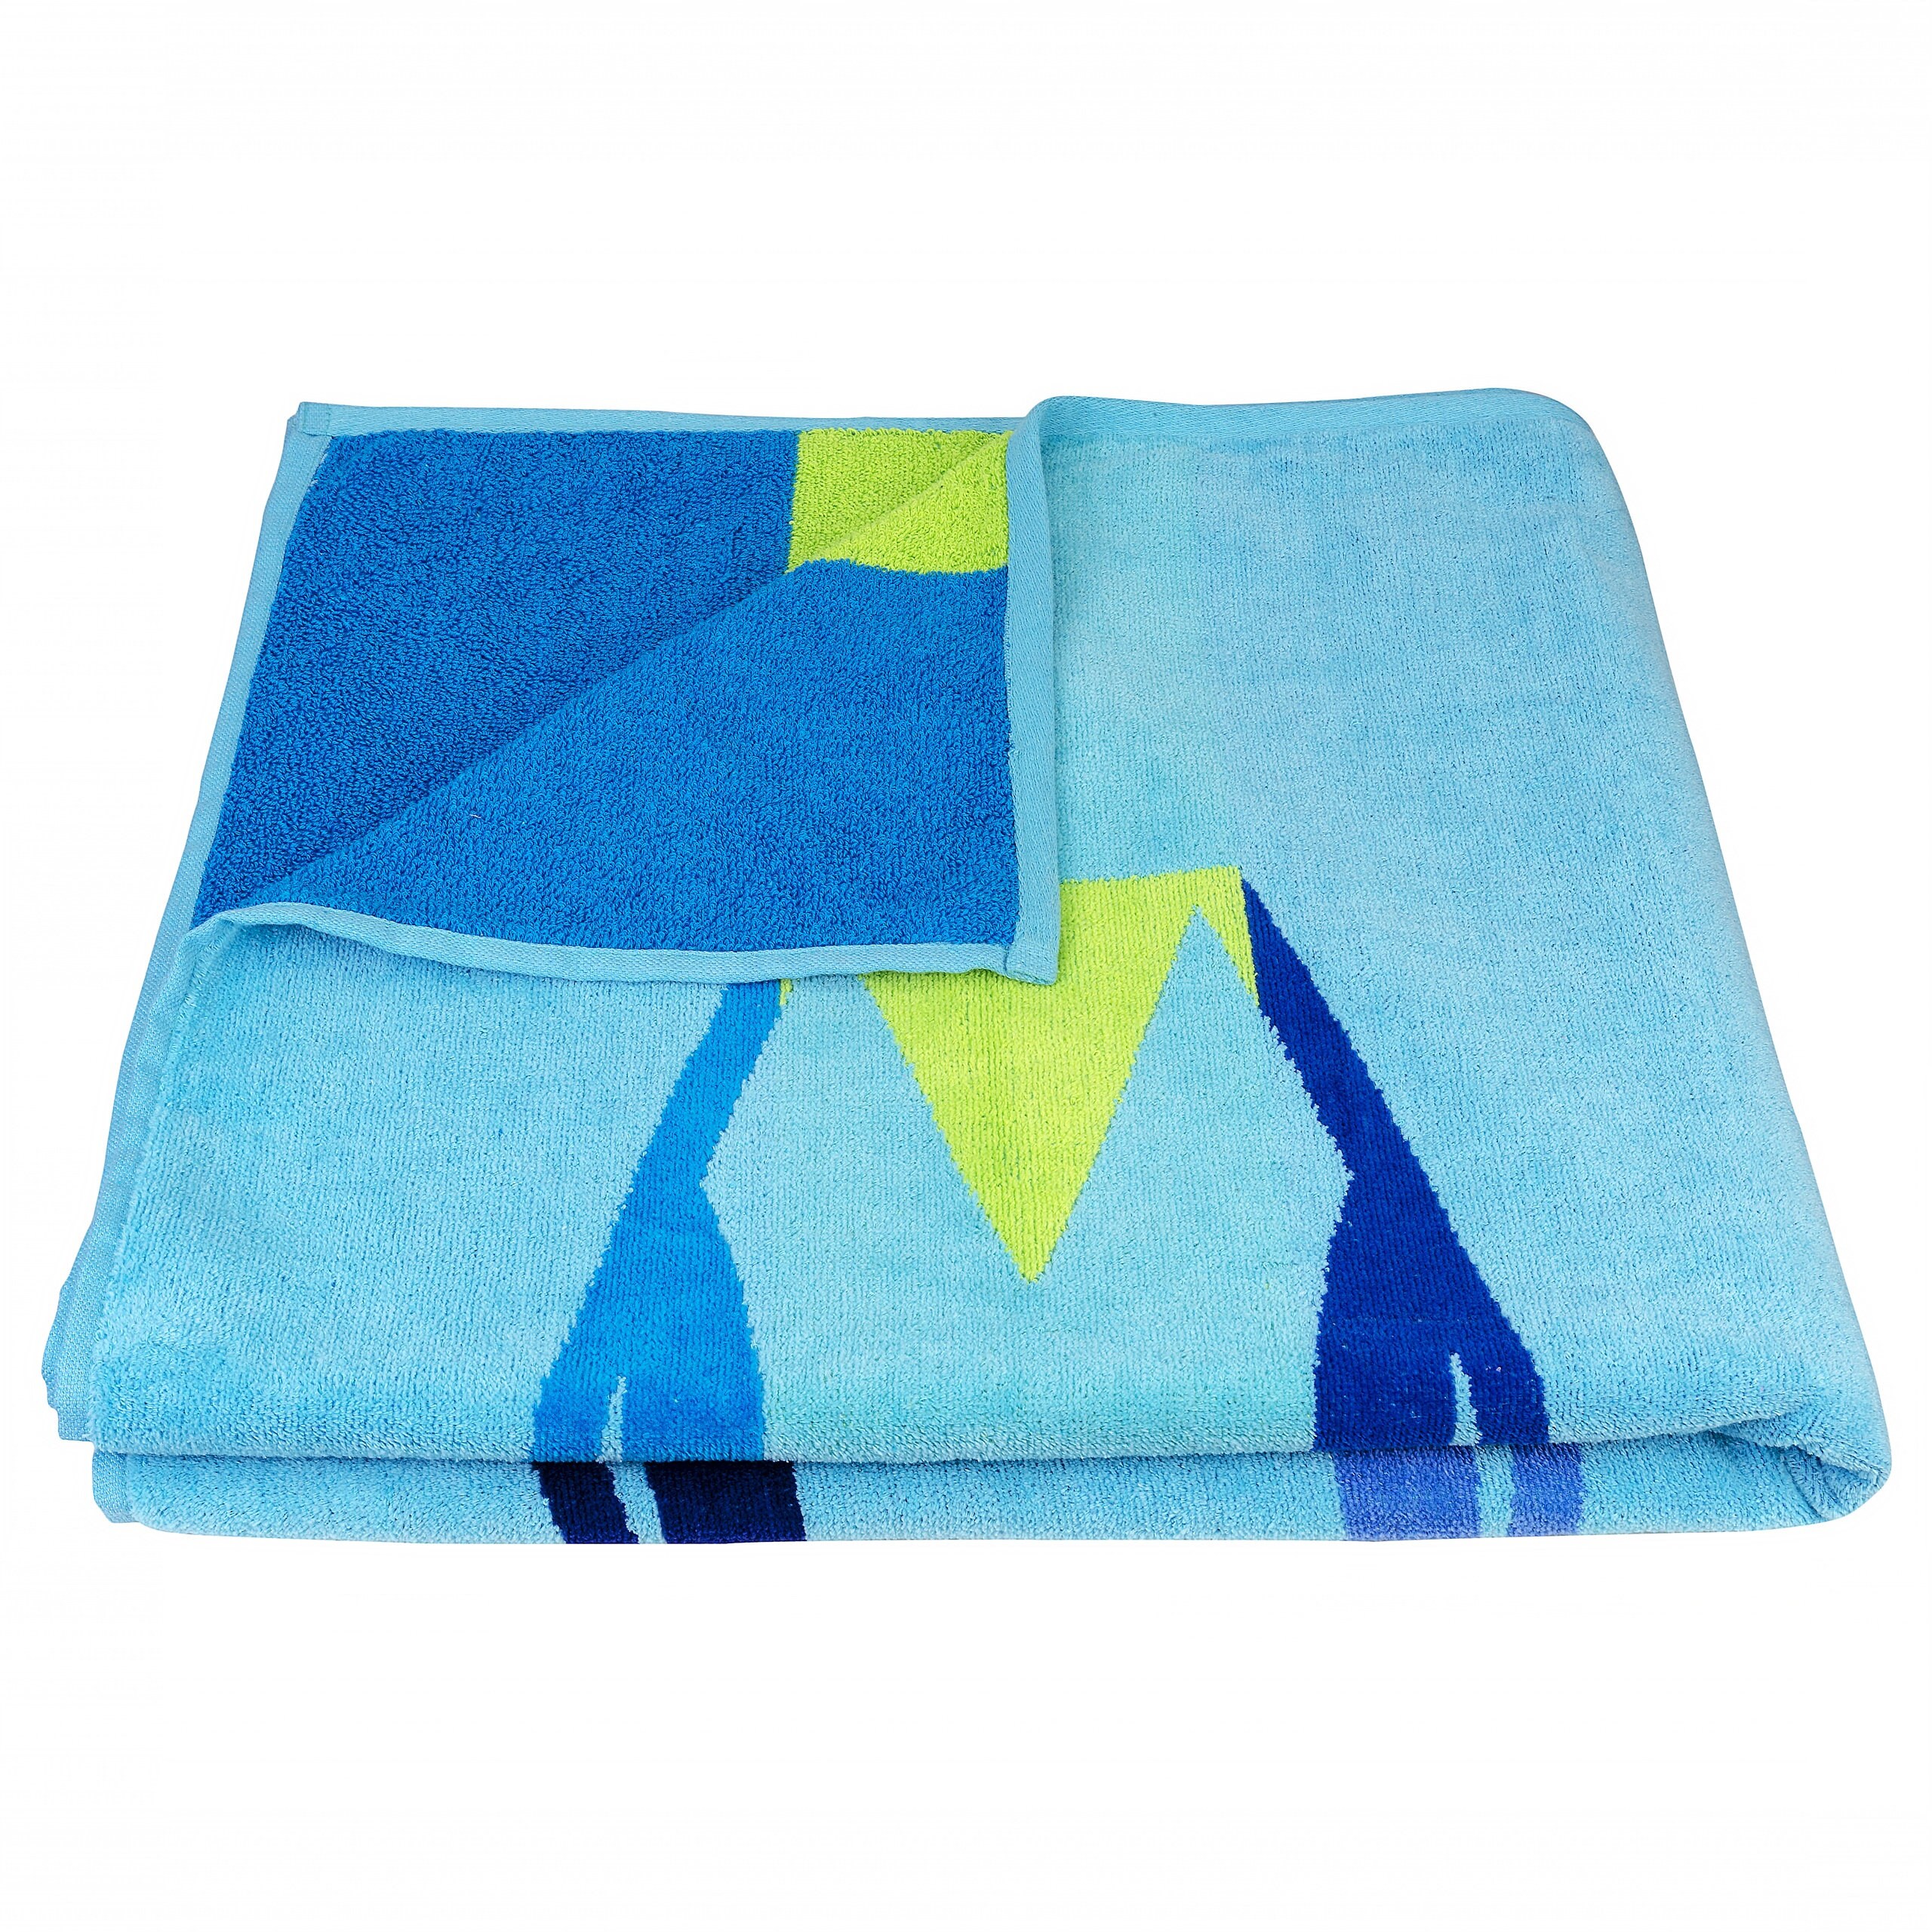 100% COTTON LARGE HOME BEACH BATH TOWEL SOFT ABSORBENT STRIPE TOWELS 90 x  180 cm